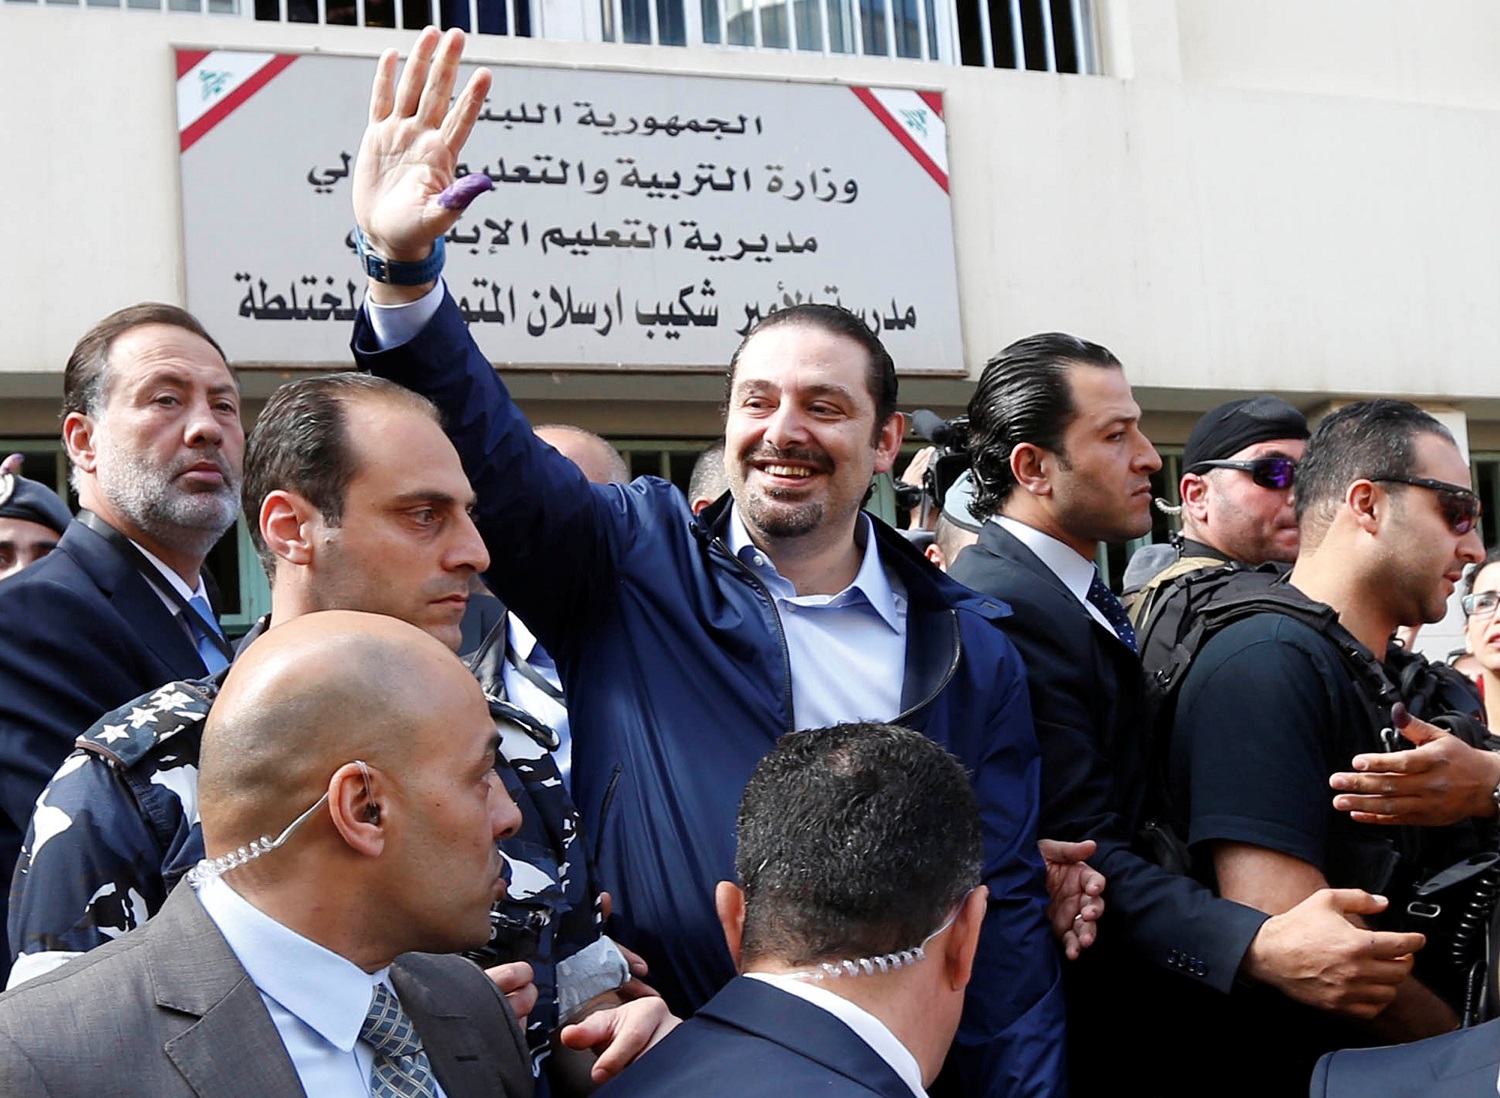 Επανέρχεται η εύθραυστη ισορροπία στον Λίβανο με την επιστροφή Χαρίρι